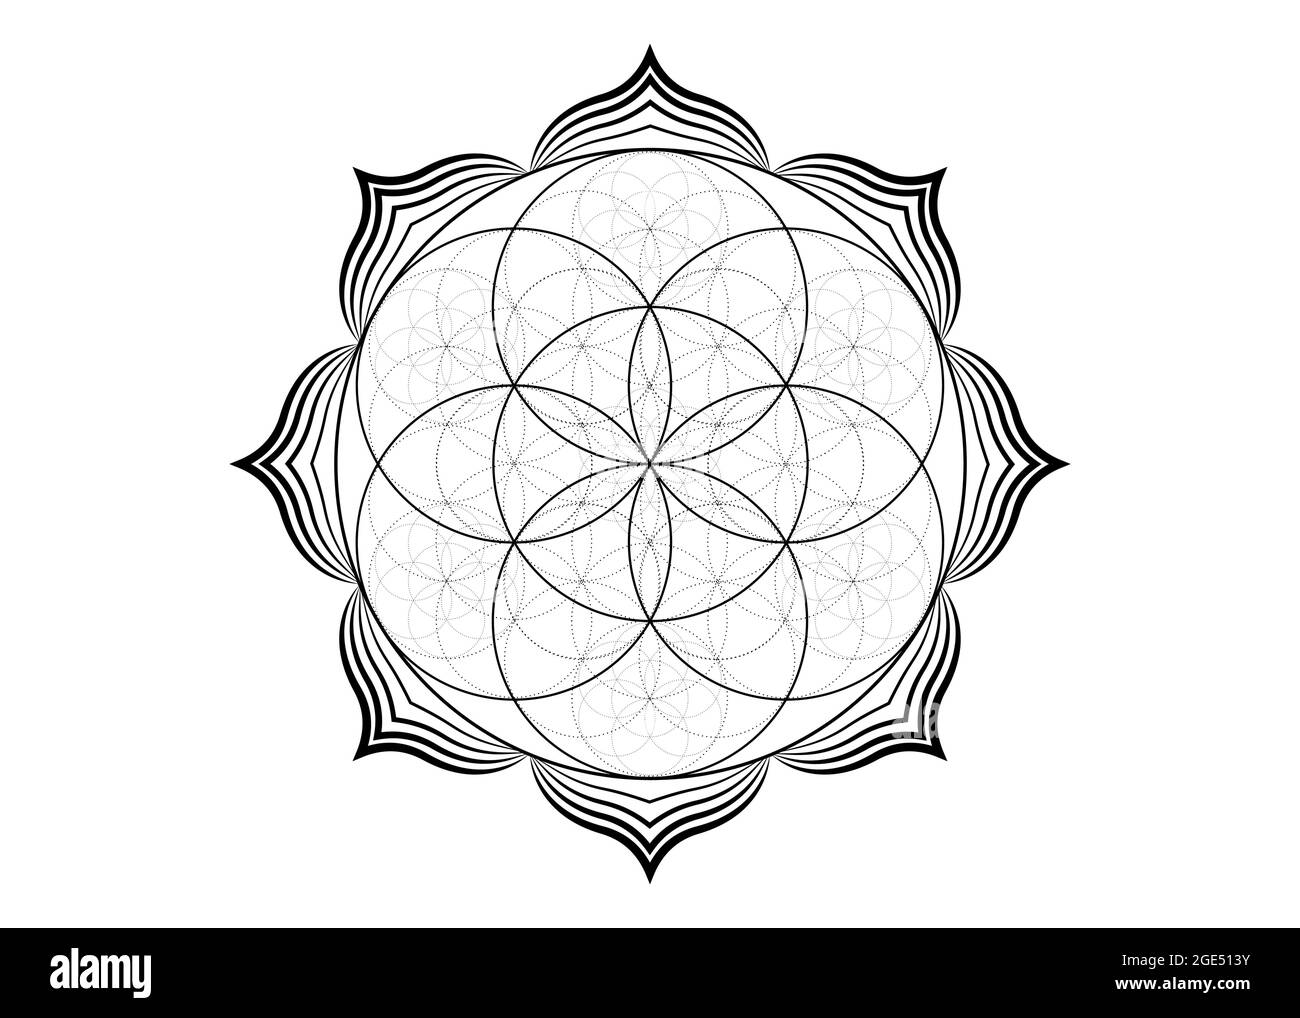 Graine fleur de vie Lotus icône, yantra mandala géométrie sacrée, tatouage symbole de l'harmonie et de l'équilibre. Talisman mystique, vecteur de lignes noires isolé Illustration de Vecteur